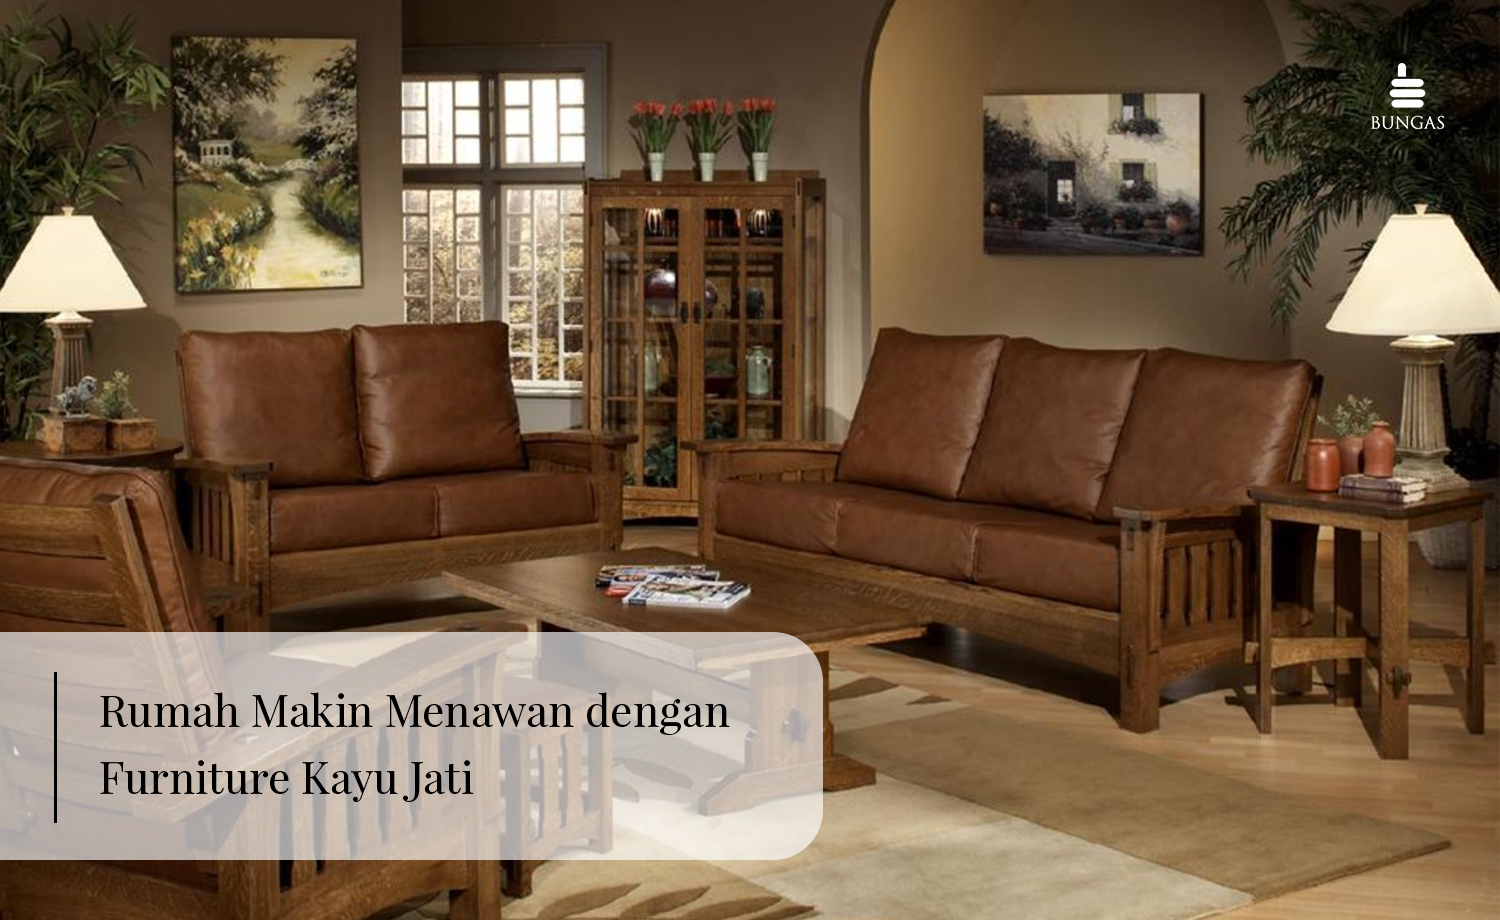 Read more about the article Rumah Makin Menawan dengan Furniture Kayu Jati